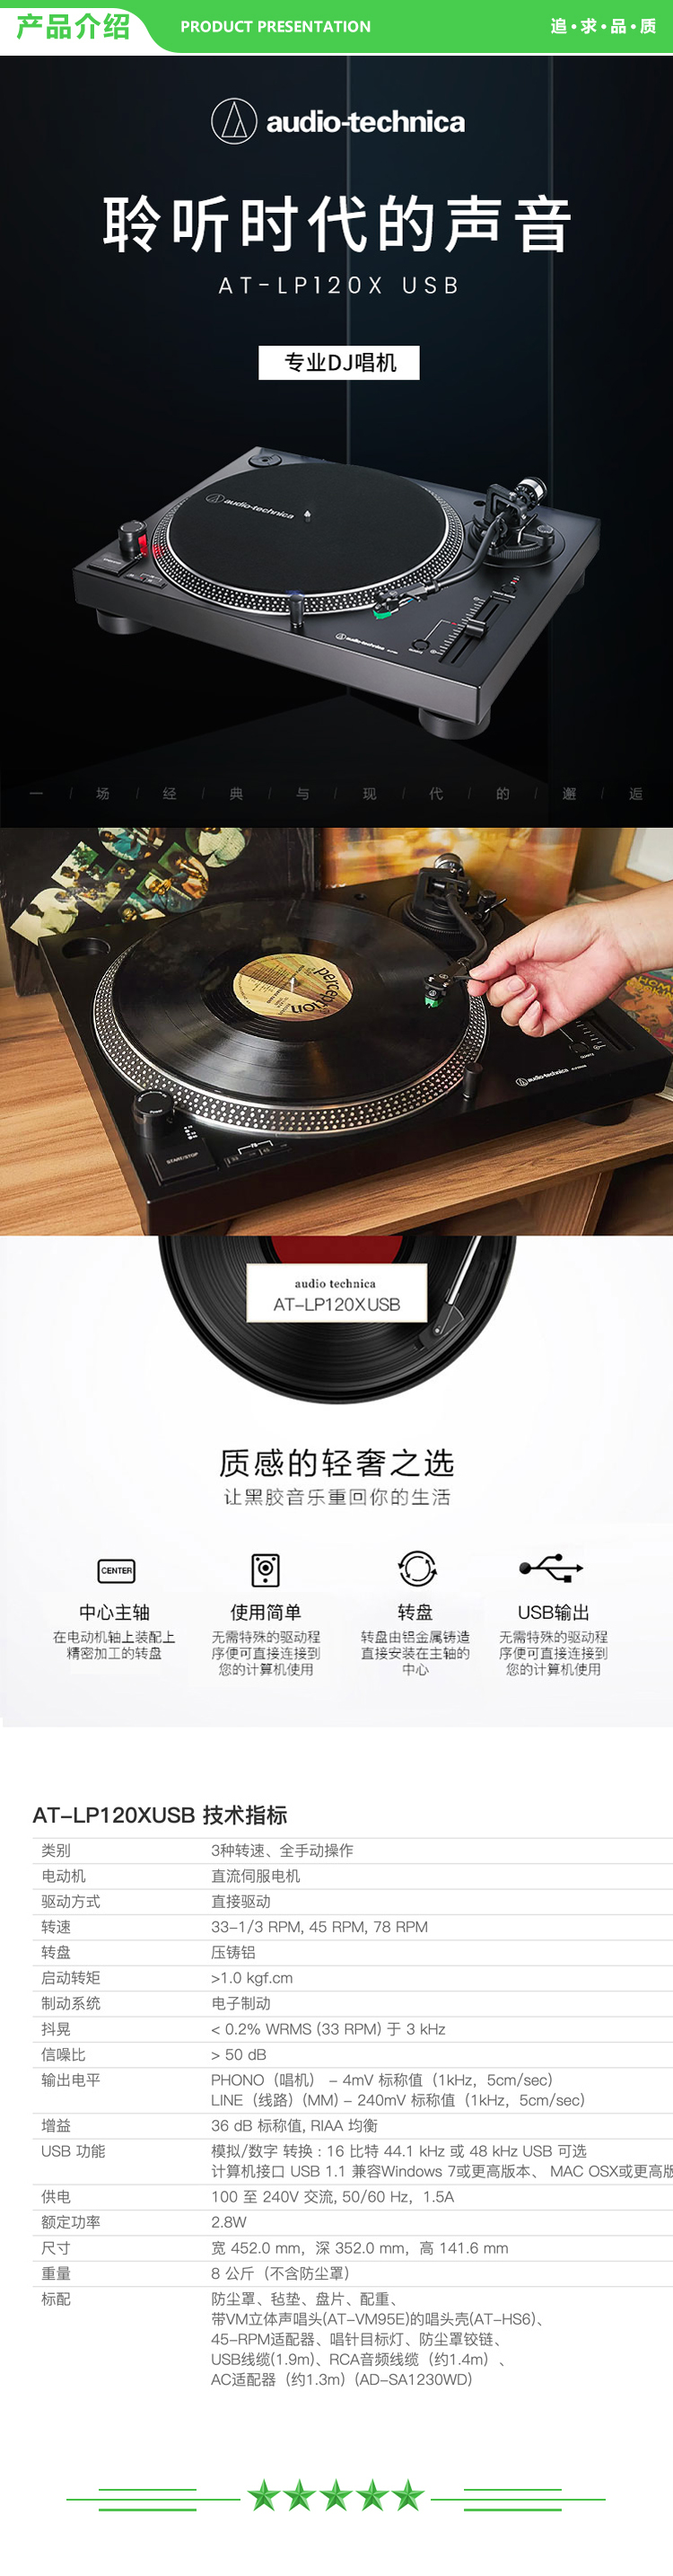 铁三角 Audio-technica AT-LP120XUSB 专业直接传动唱盘机 黑胶唱机 复古留声机黑胶唱片机 .jpg